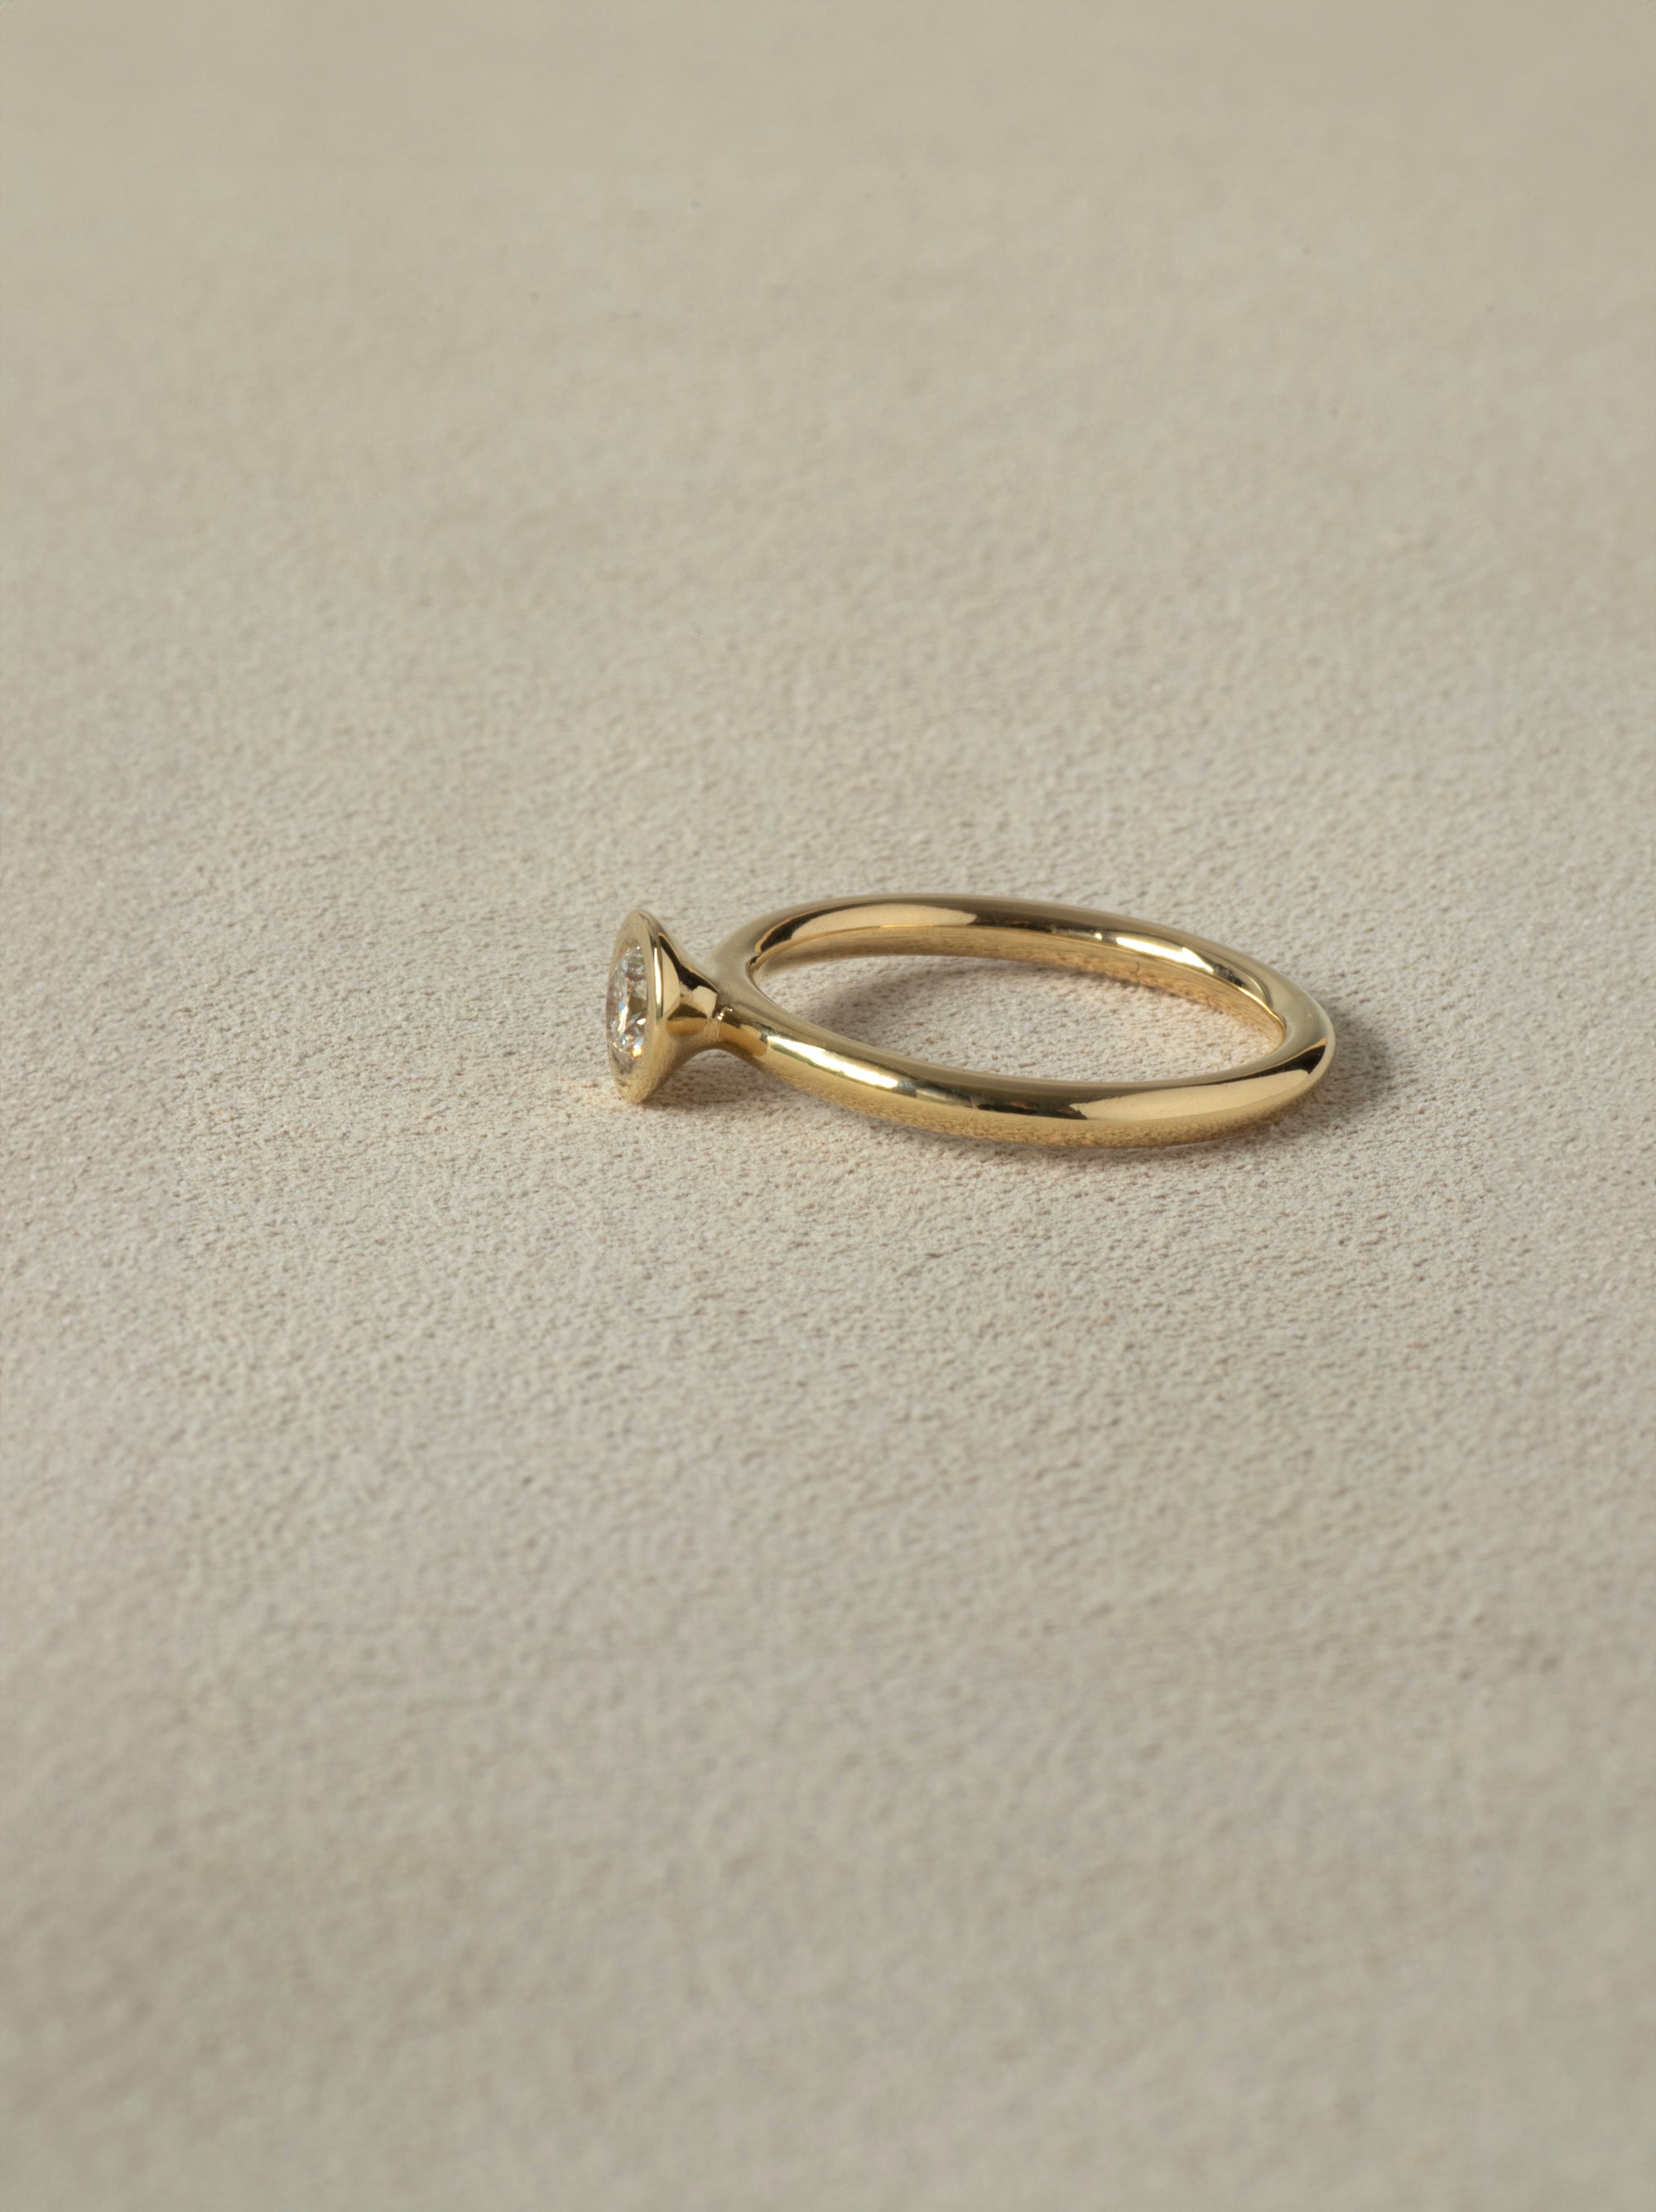 Bespoke Minimal Engagement Ring